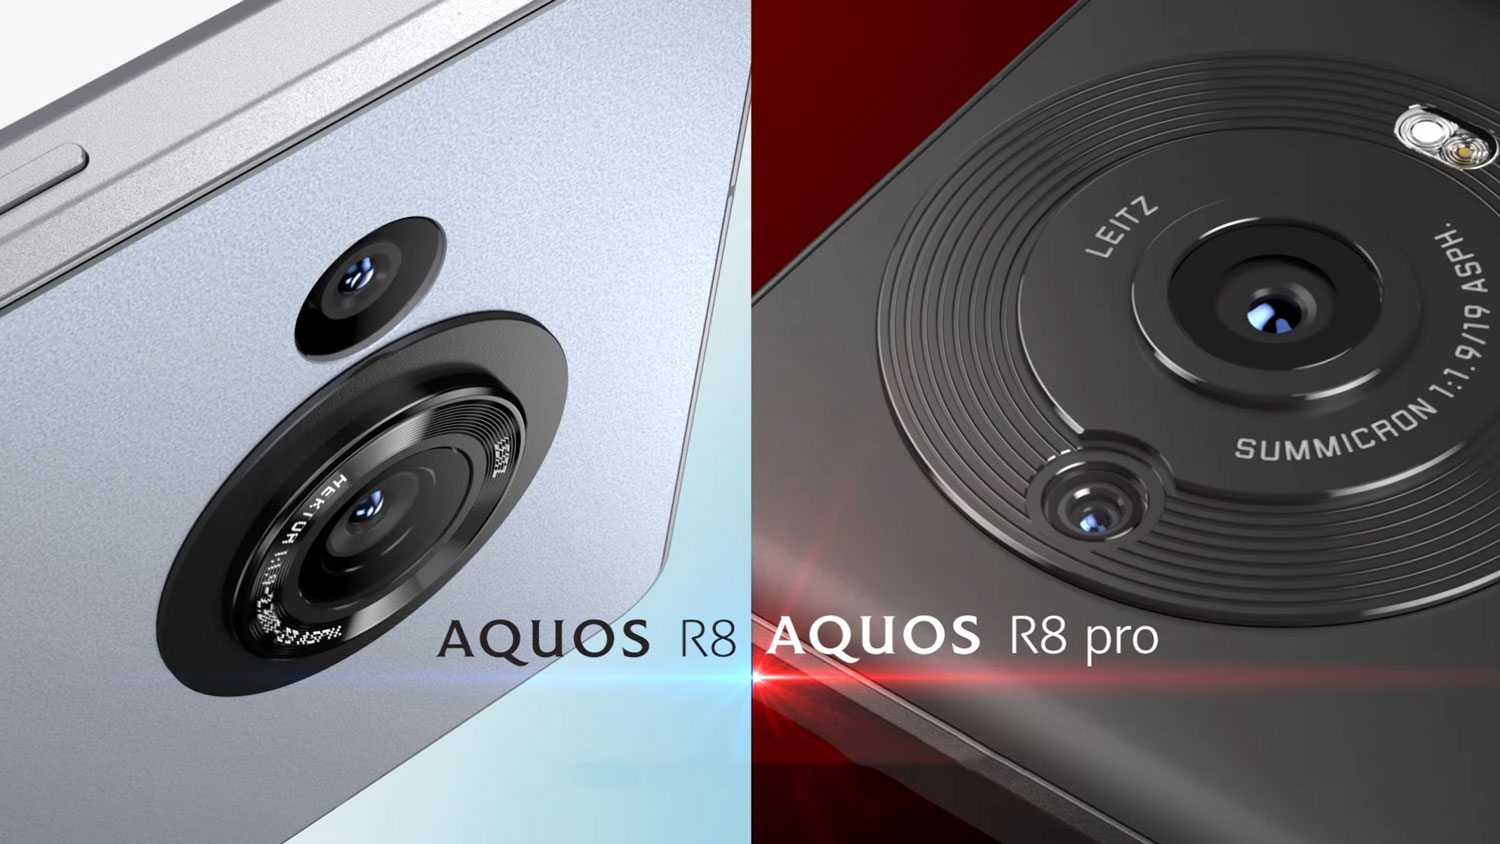 AQUOS R8 vs AQUOS R8 pro